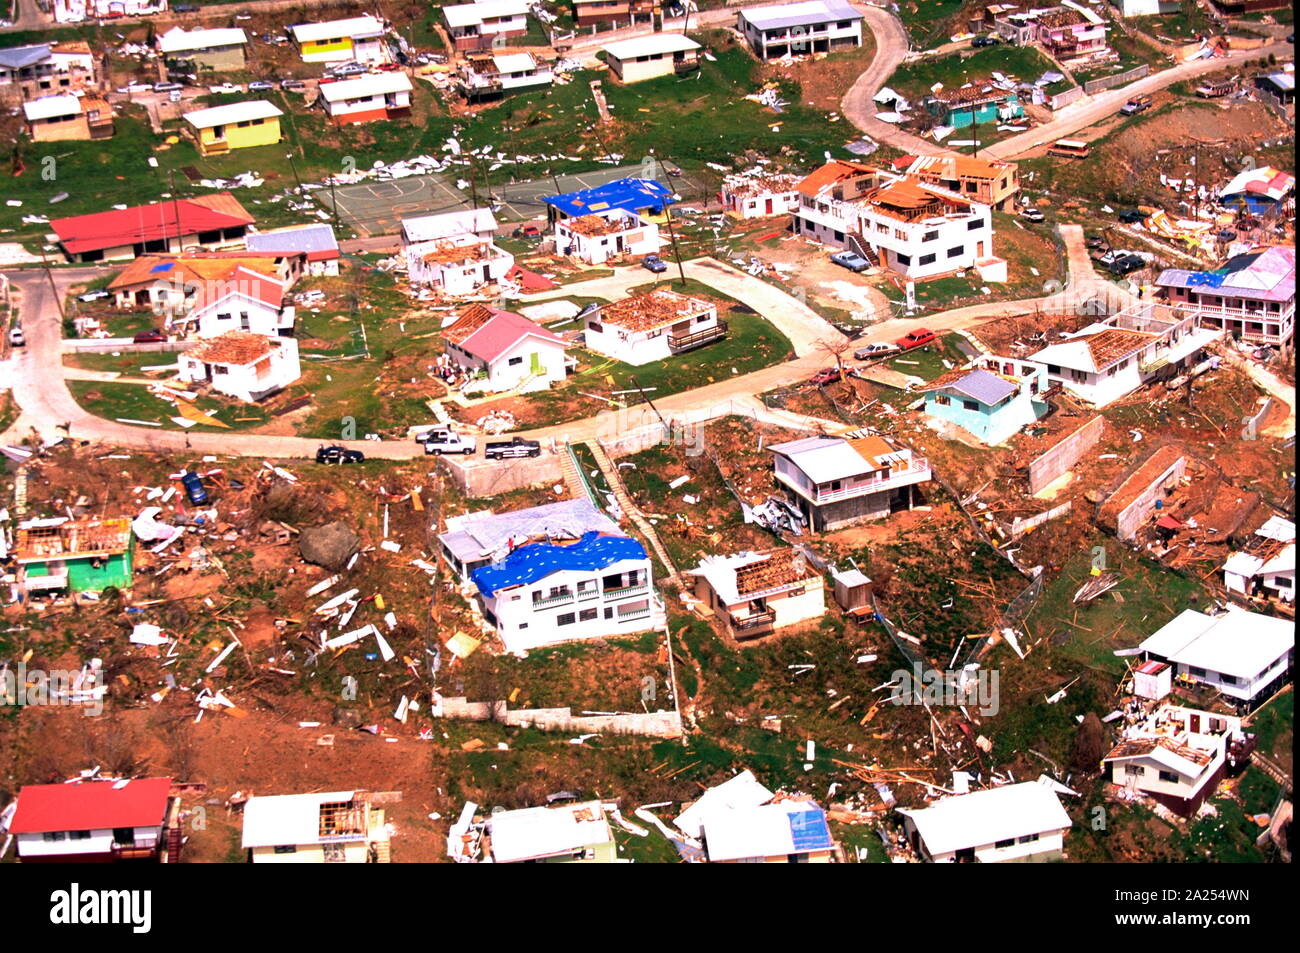 Uragano Marilyn, 25 settembre 1995. Una veduta aerea della devastazione causata in Isole Vergini, dall'uragano. Otto persone sono morte e più di 2 miliardi di dollari di danni alla proprietà è stata causata dall'uragano Marilyn. Foto Stock